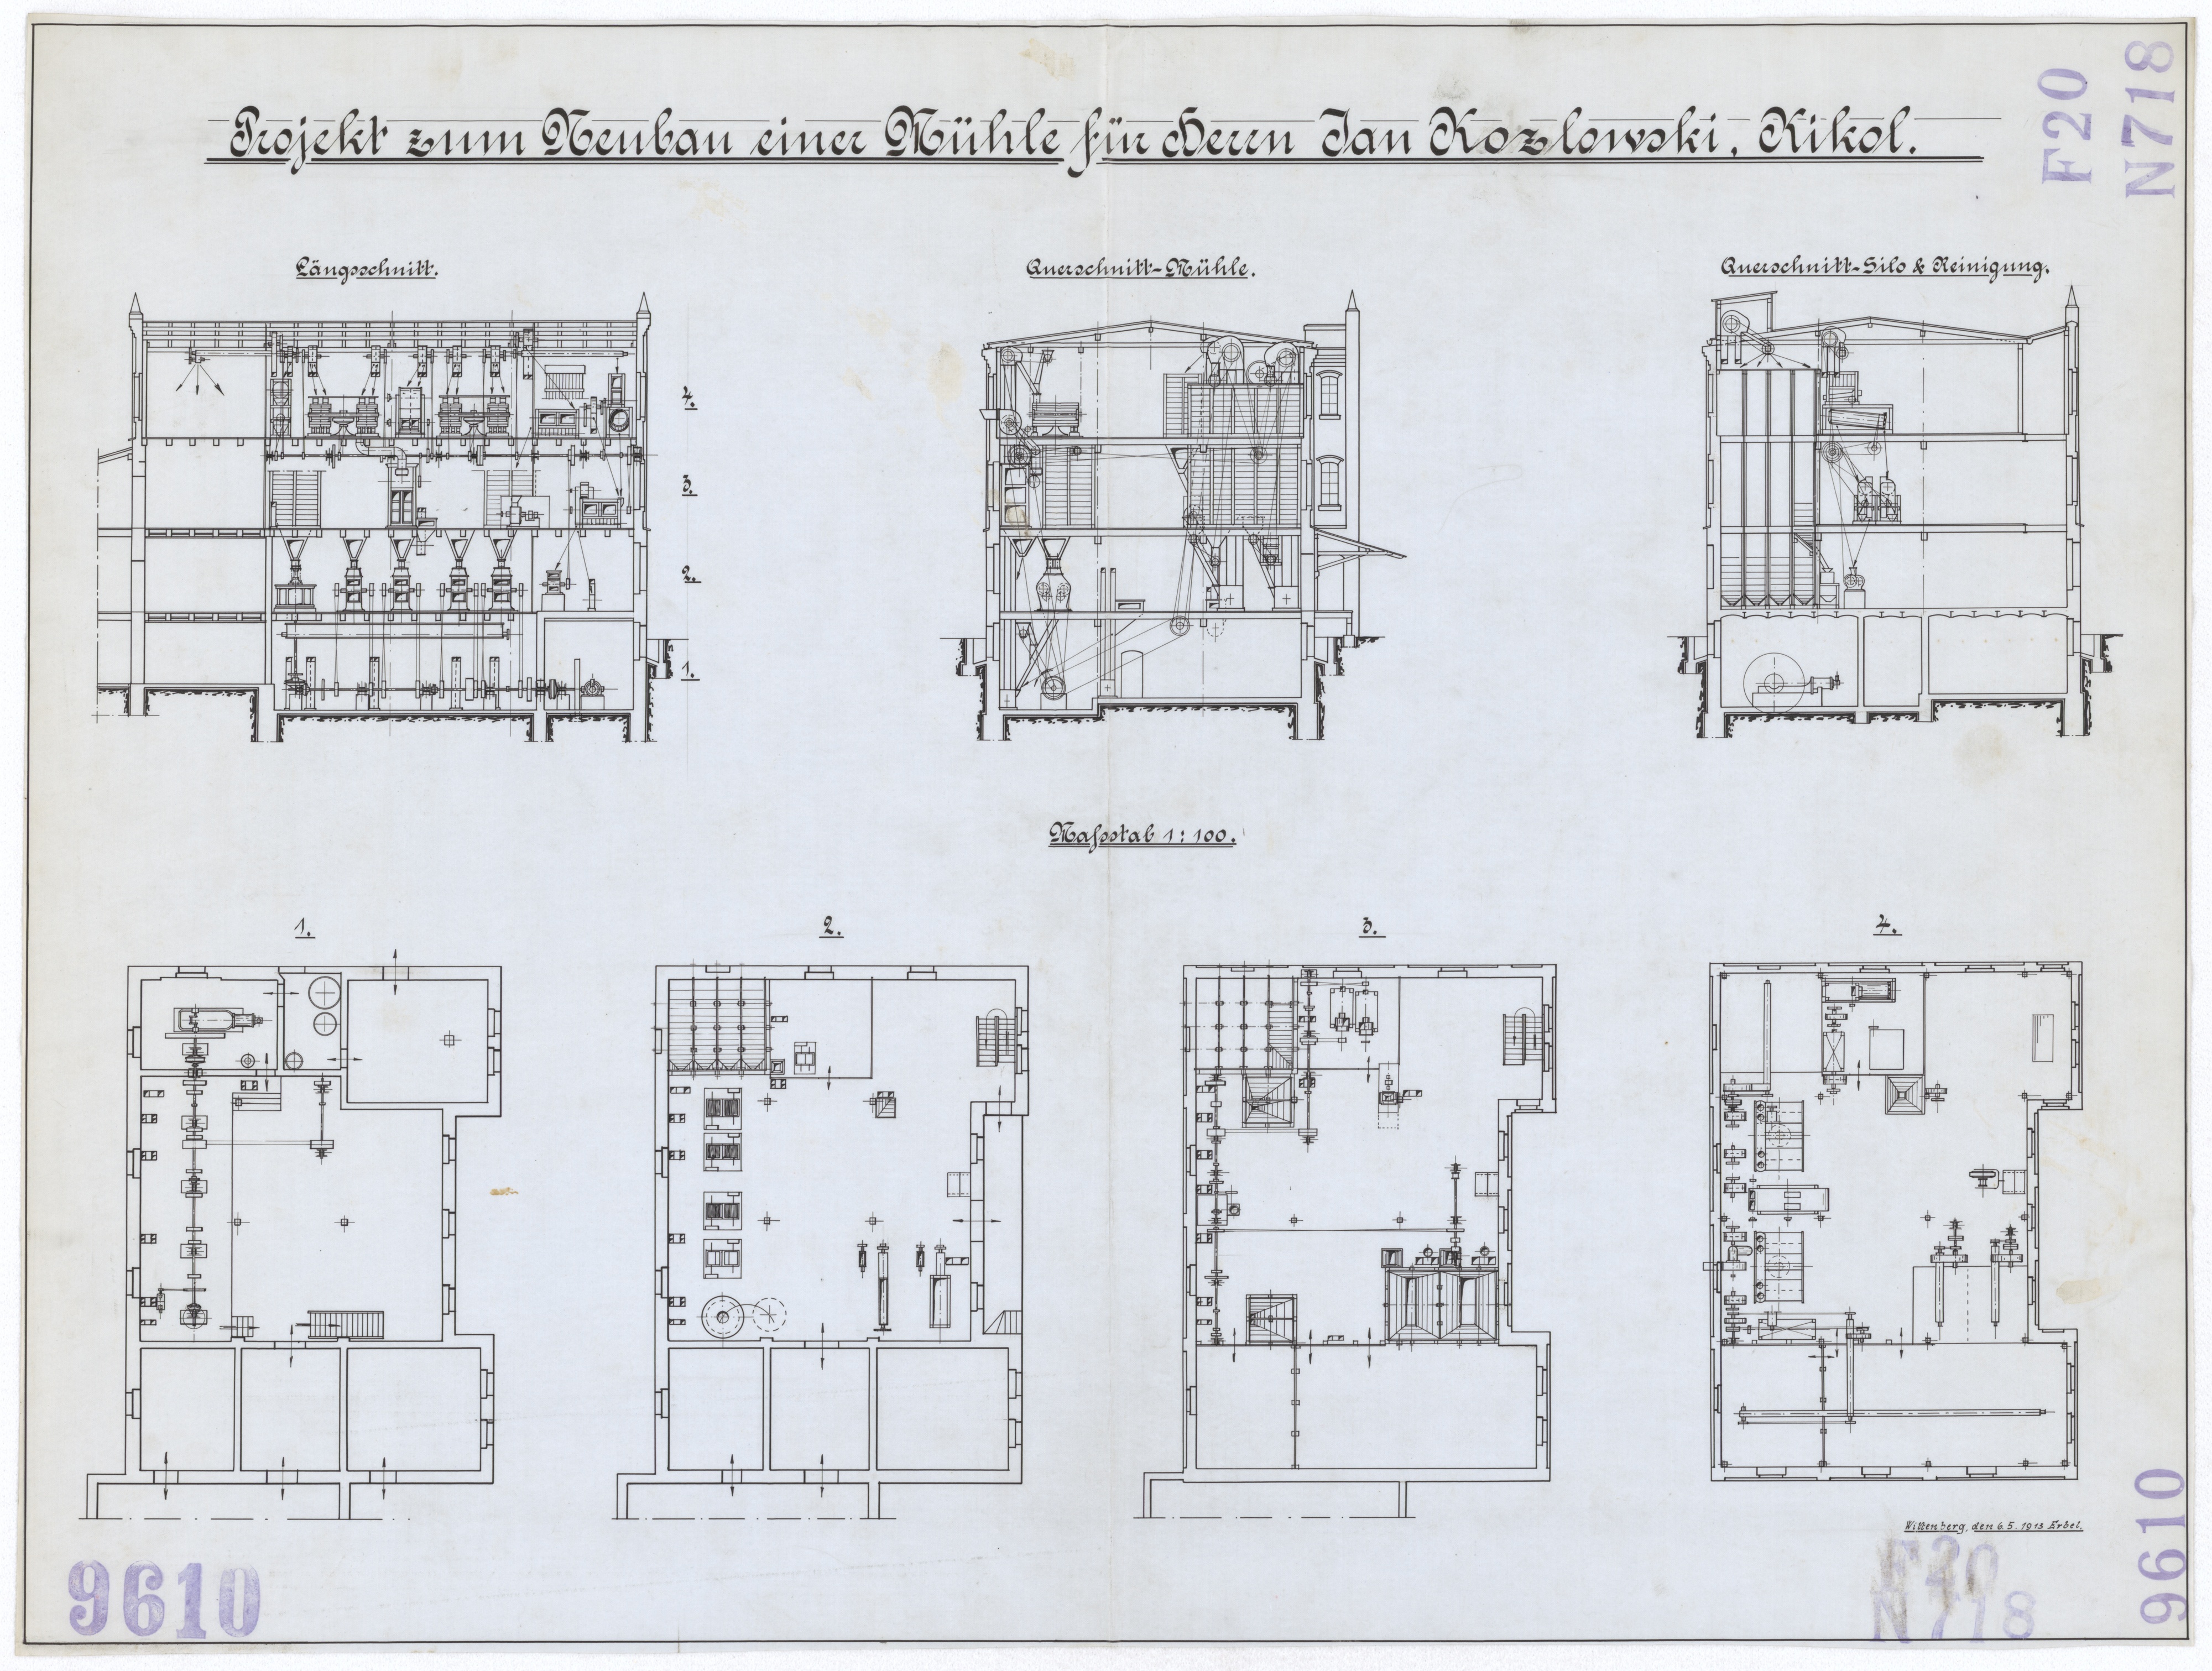 Technische Zeichnung : Projekt zum Neubau einer Mühle für Herrn Jan Kozlowski, Kikol (Stiftung Deutsches Technikmuseum Berlin CC BY-SA)